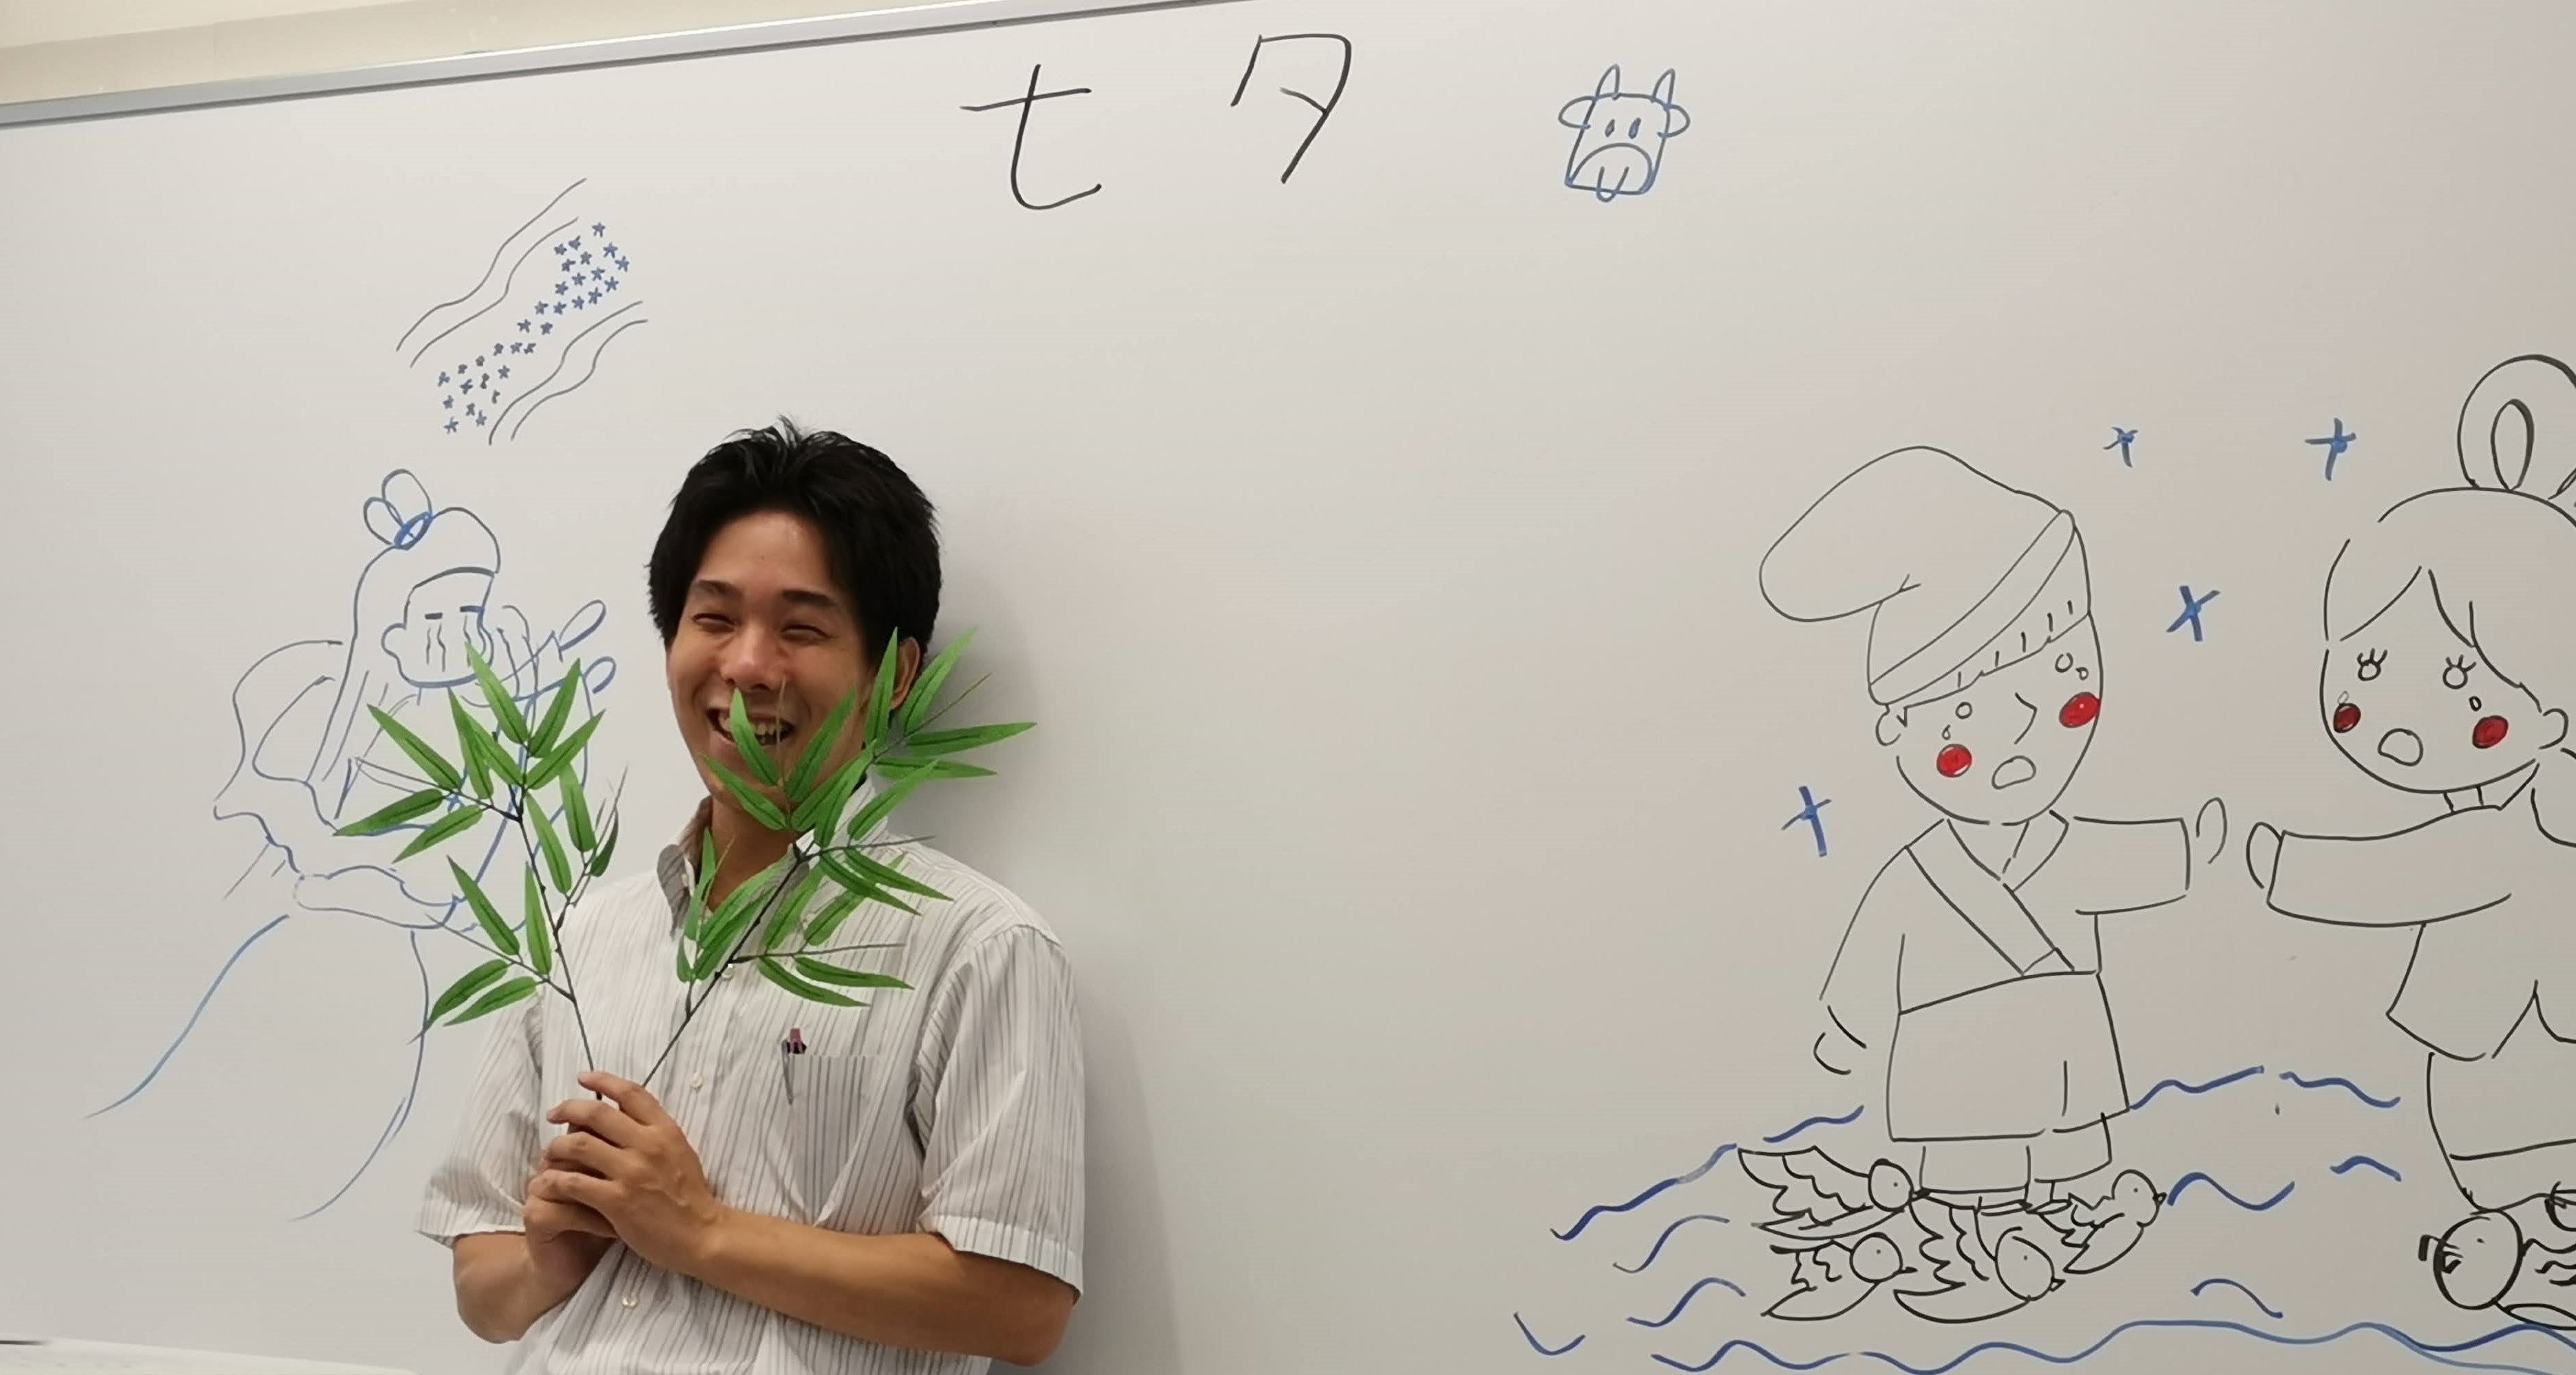 日本語教師プロファイル北琢磨さんー人との関りを大切に、言語の楽しさを知って